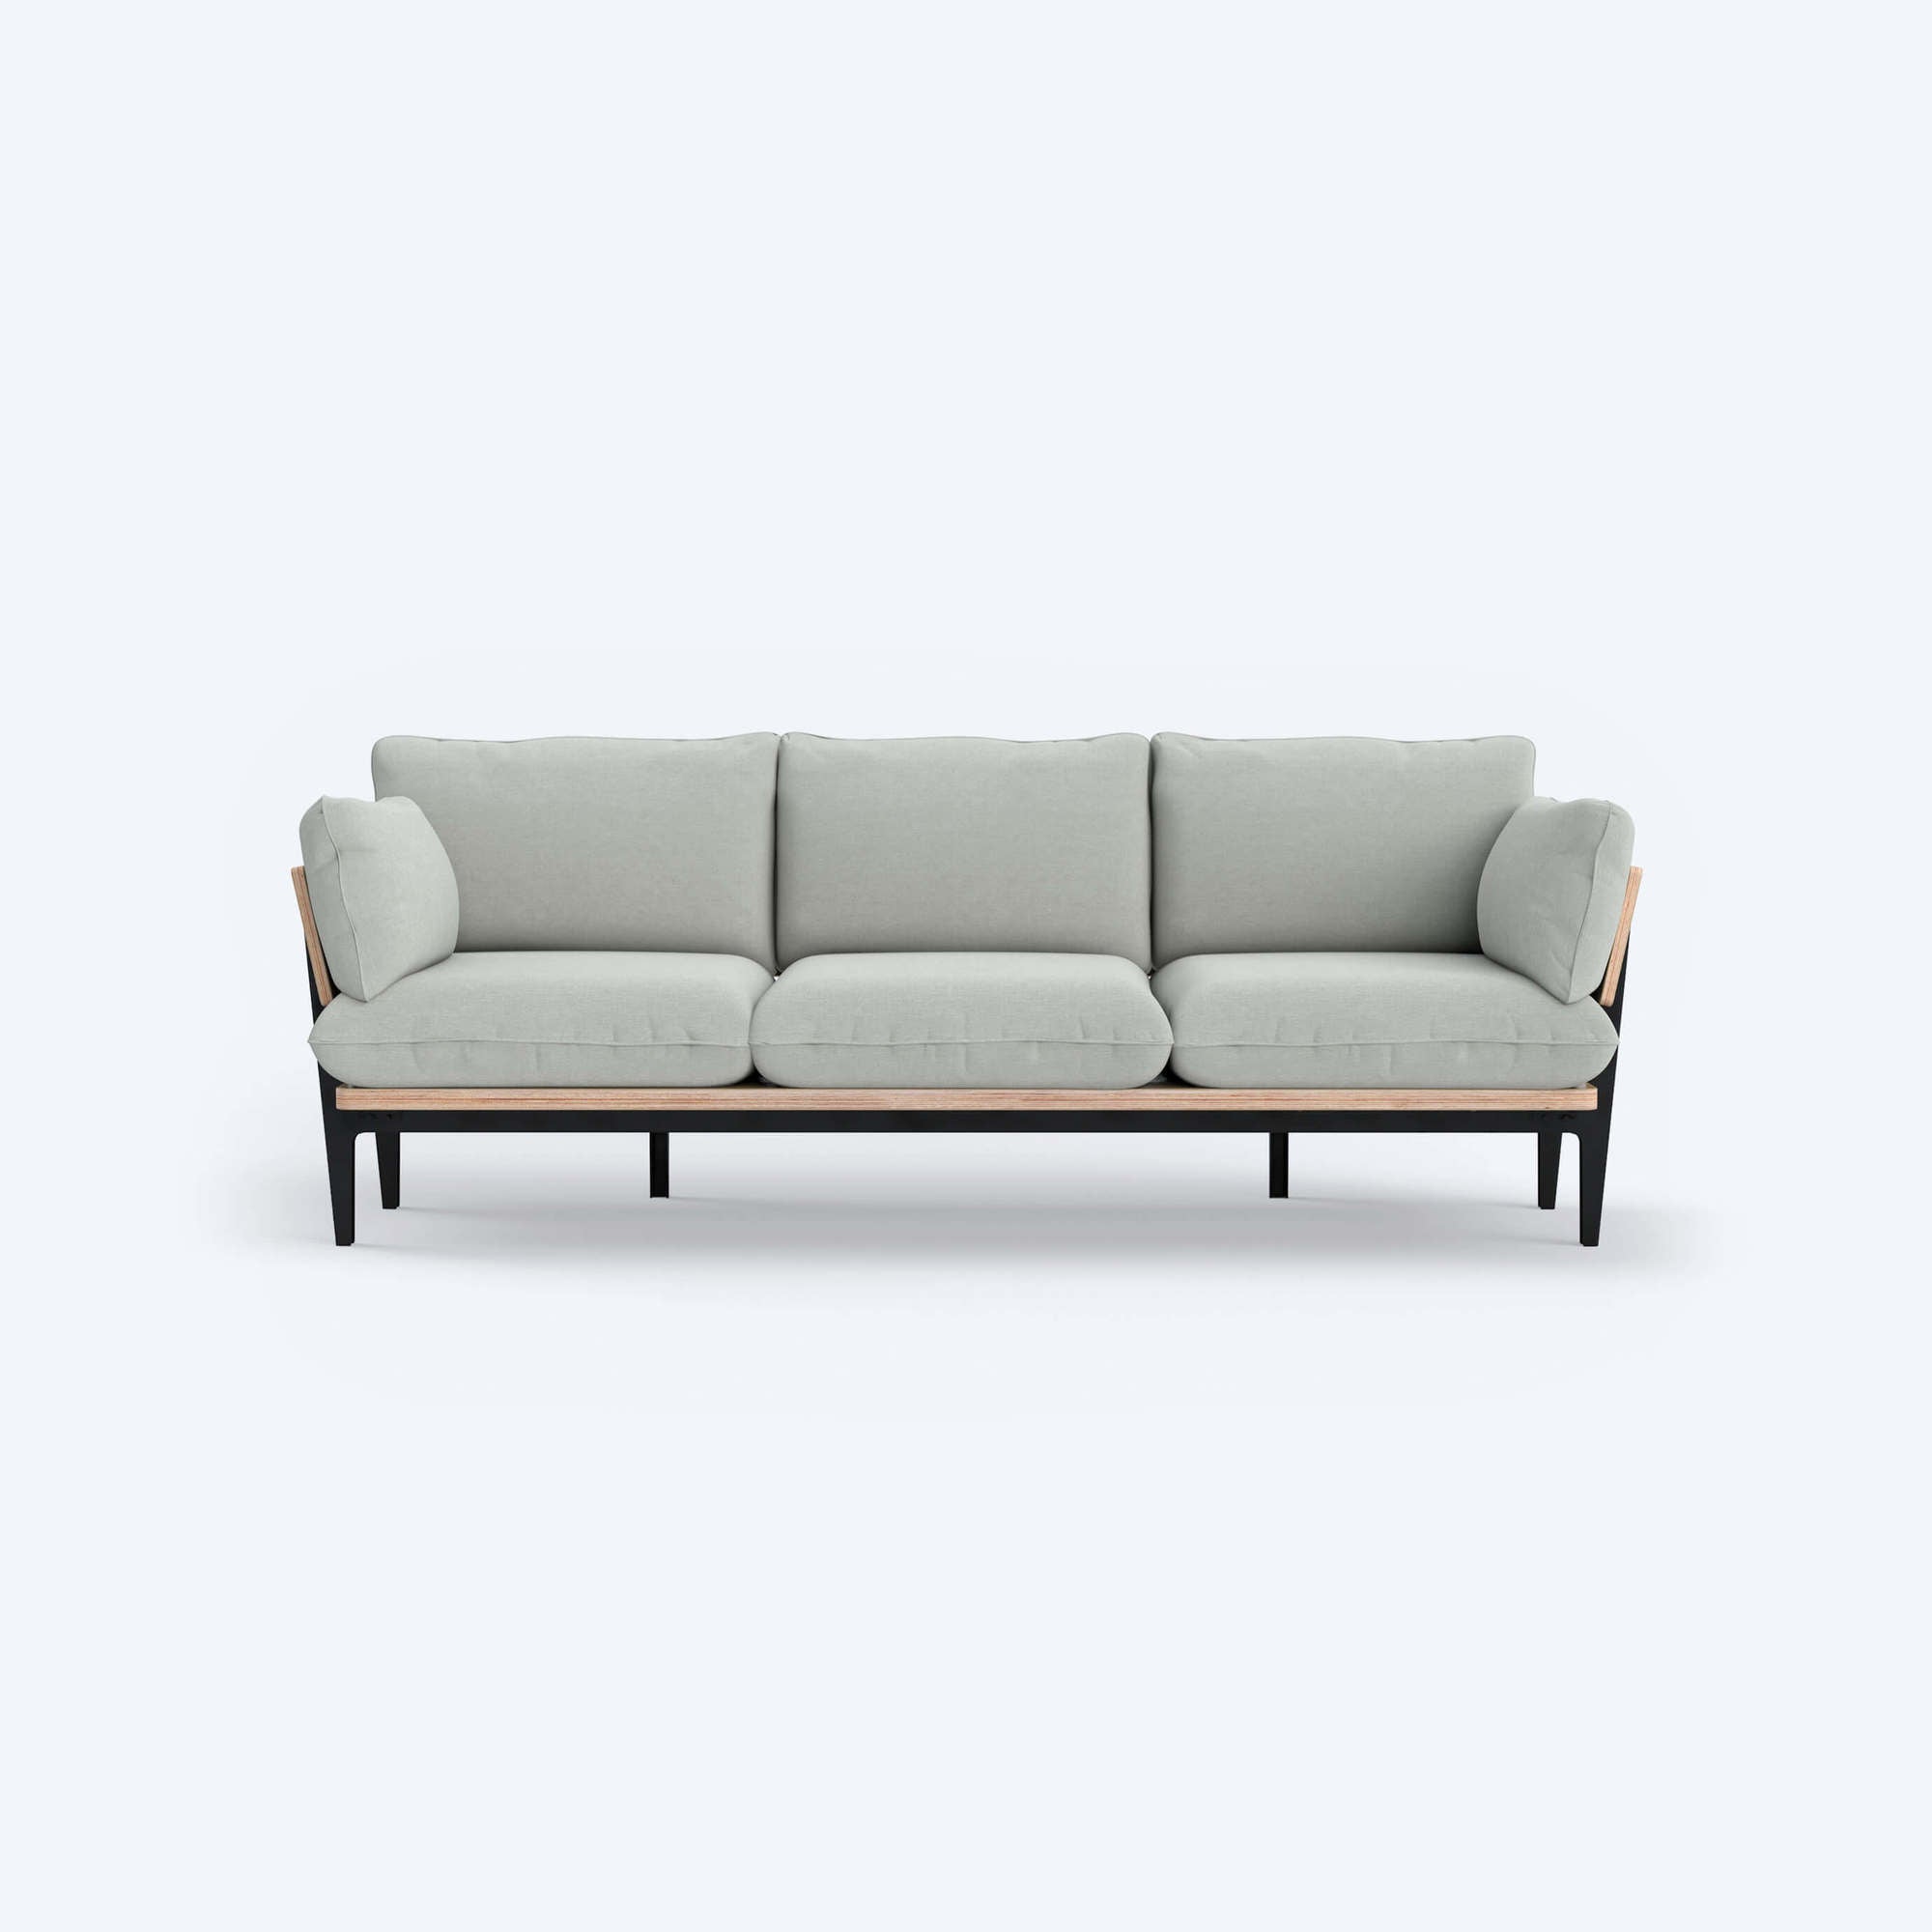 The Sofa